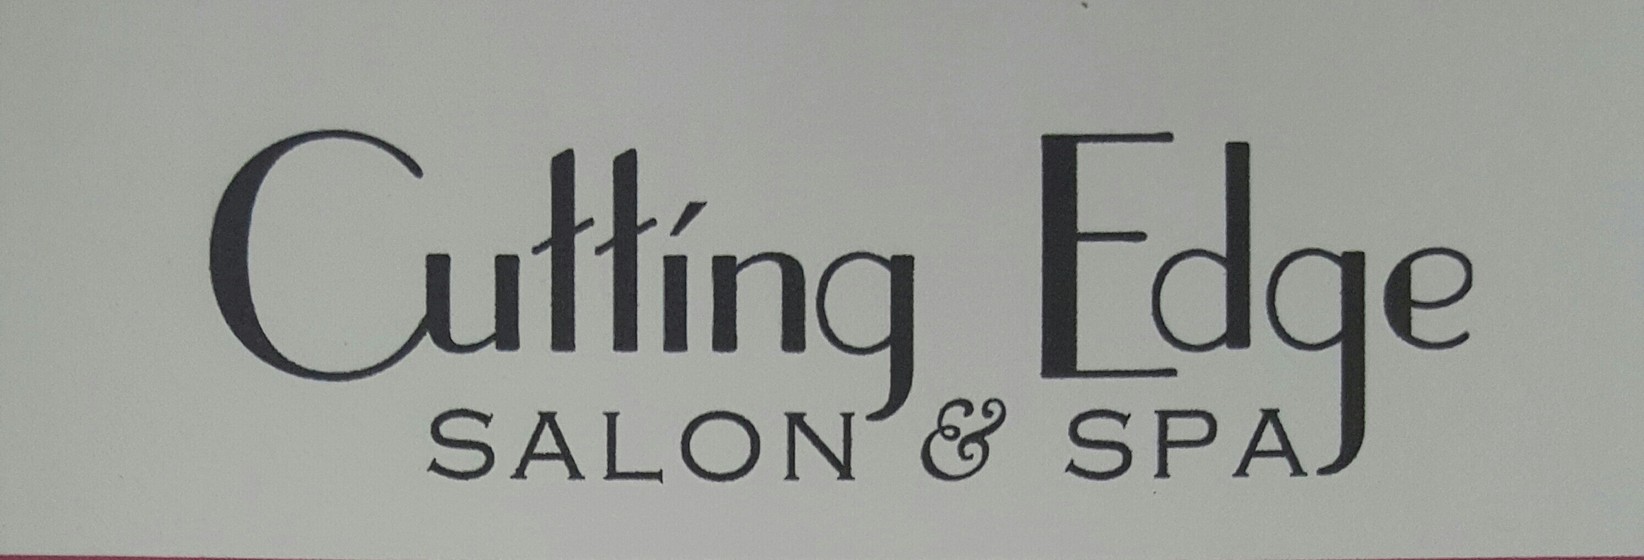 Cutting Edge Salon & Spa 802 N Delaware St, Dewey Oklahoma 74029